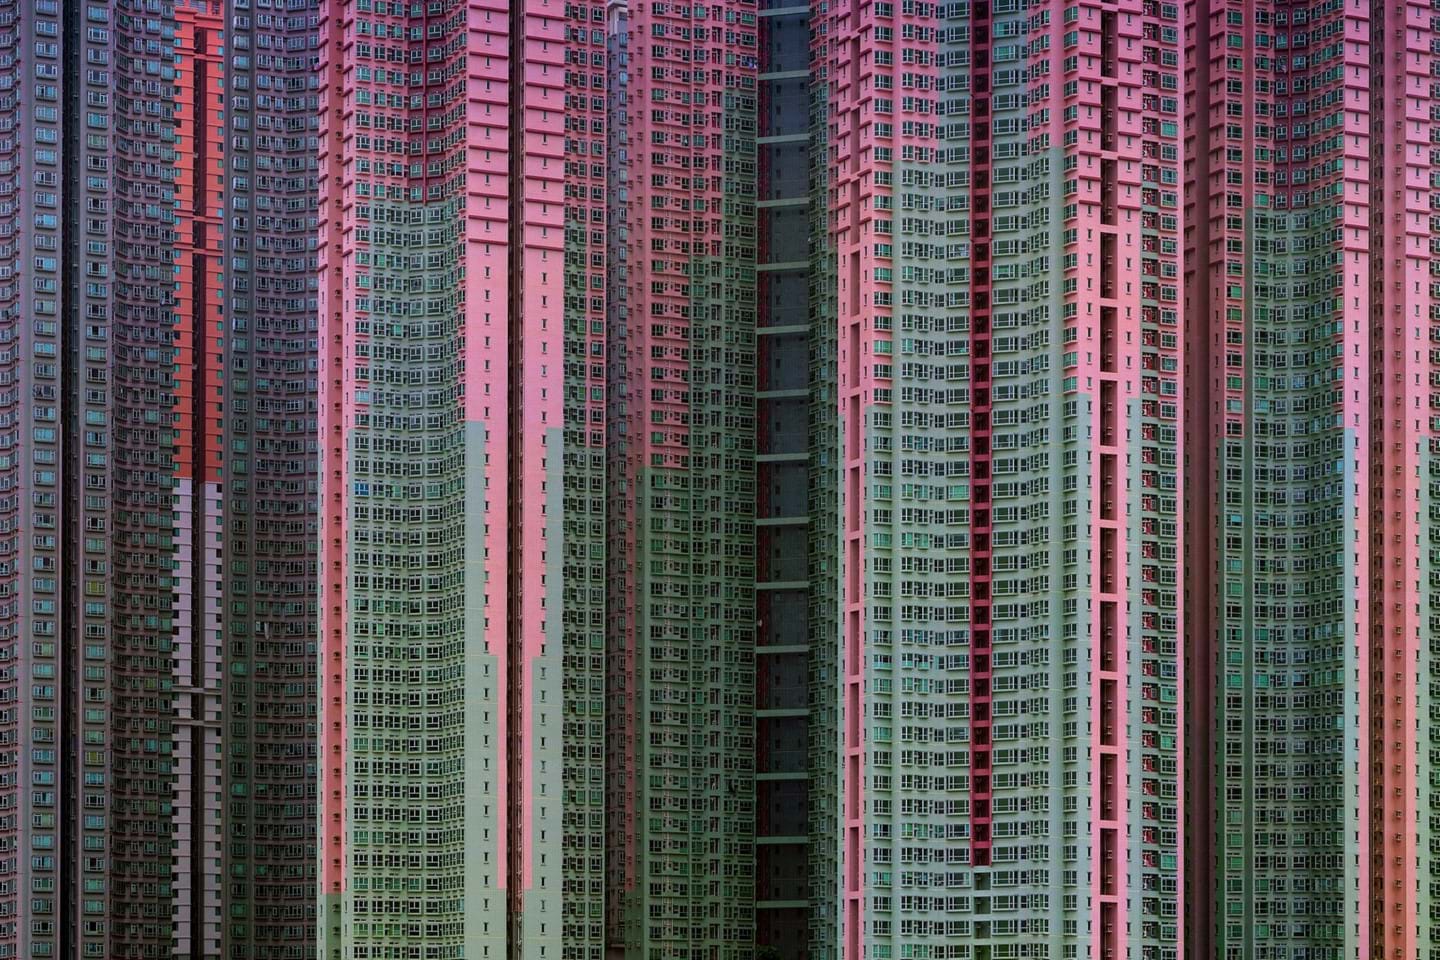 Hong Kong có khoảng 1,7 triệu căn hộ bao gồm cả những khu chung cư cũ và trong các dự án xây mới. Ảnh: Michael Wolf